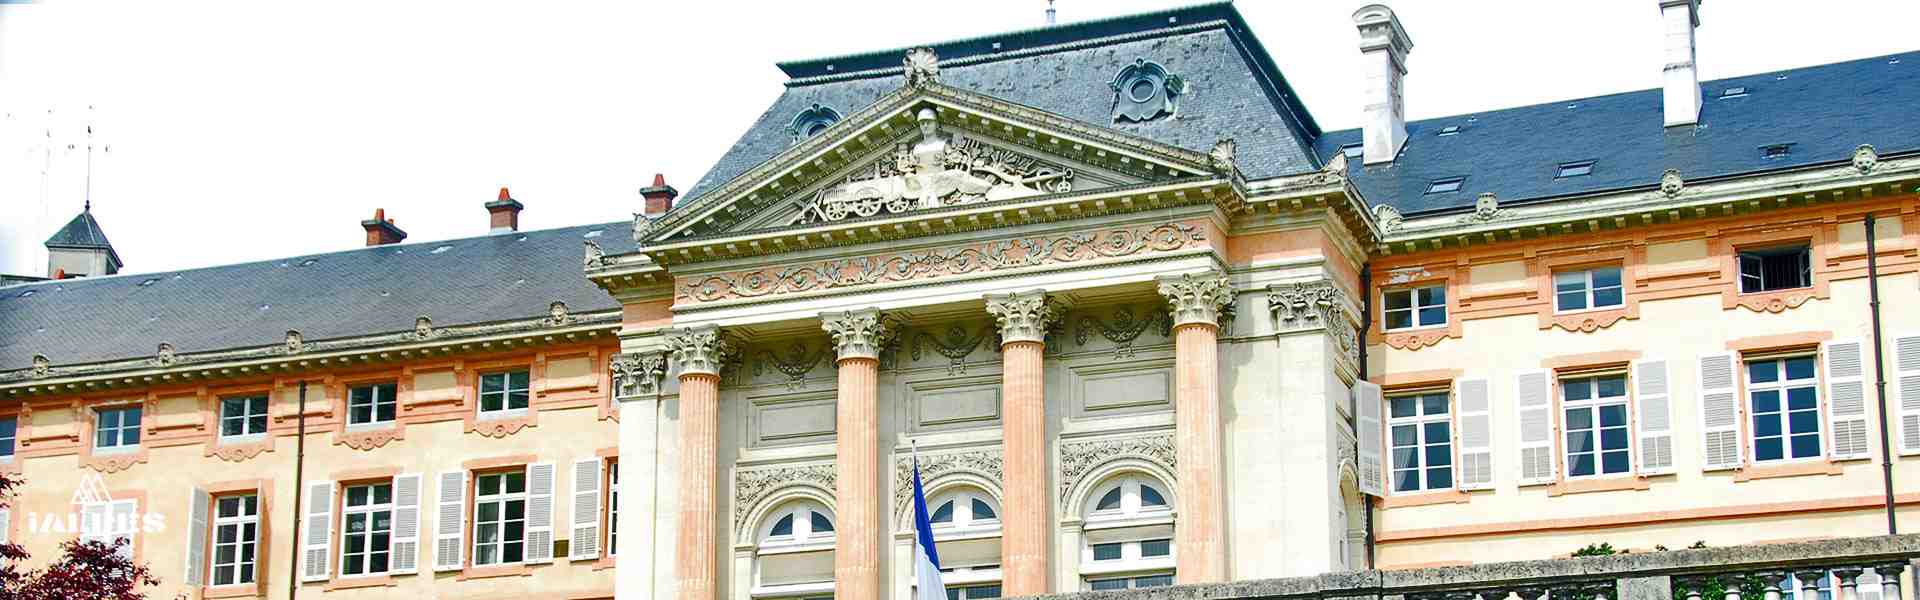 Anciens appartements royaux du château de Chambéry, Savoie